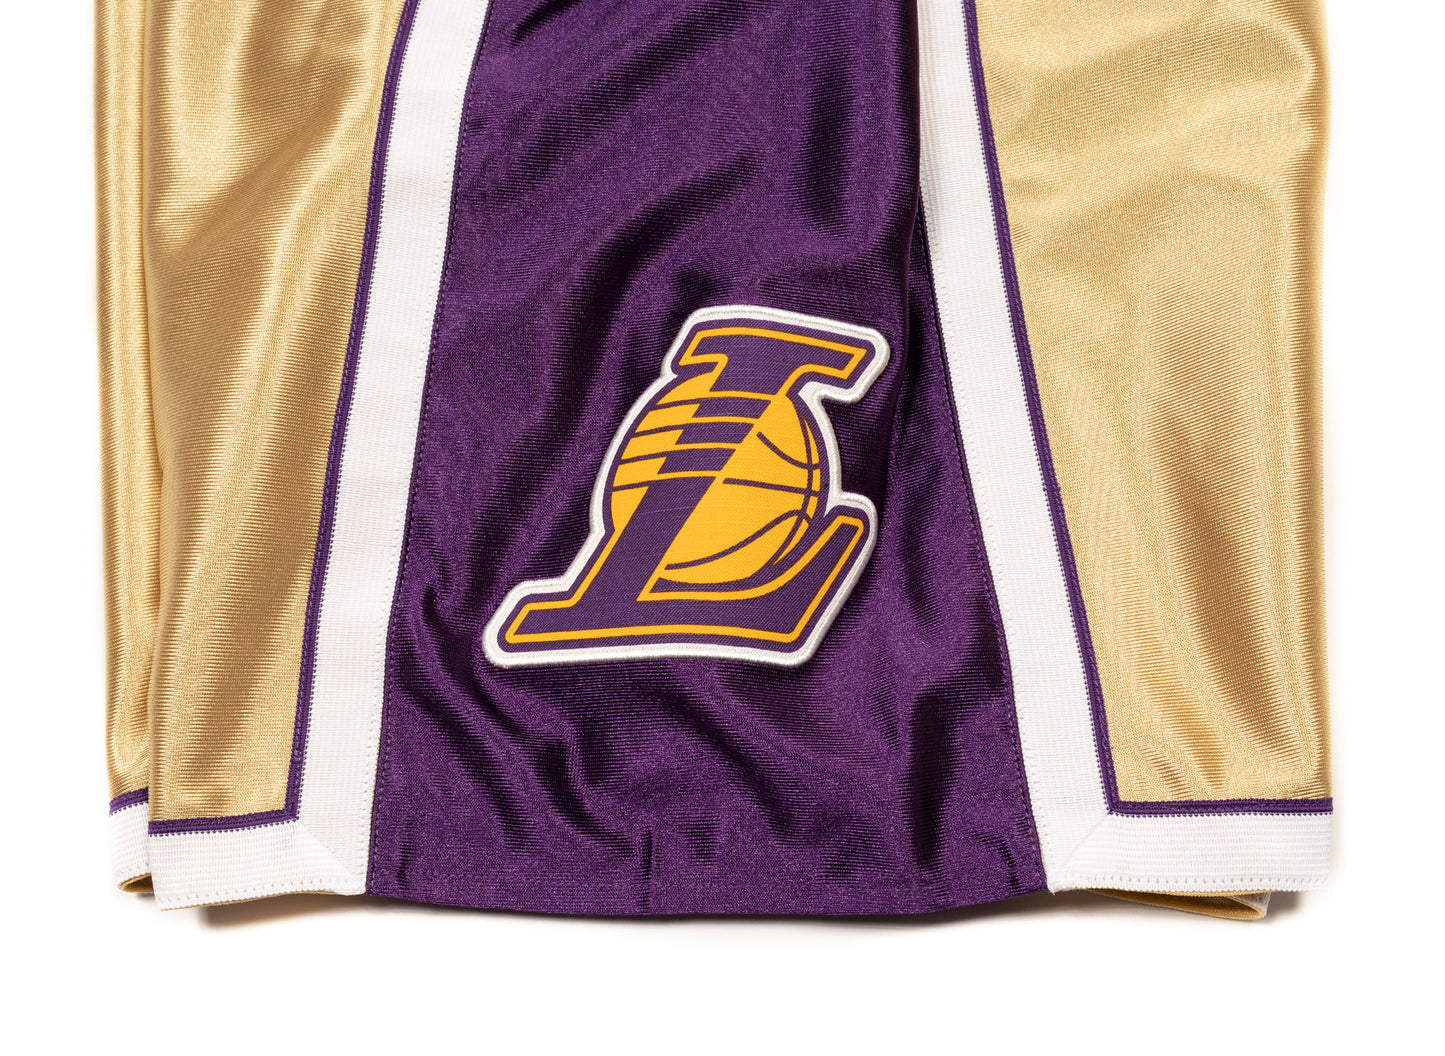 Mitchell & Ness NBA 75th Gold Swingman Lakers Shorts